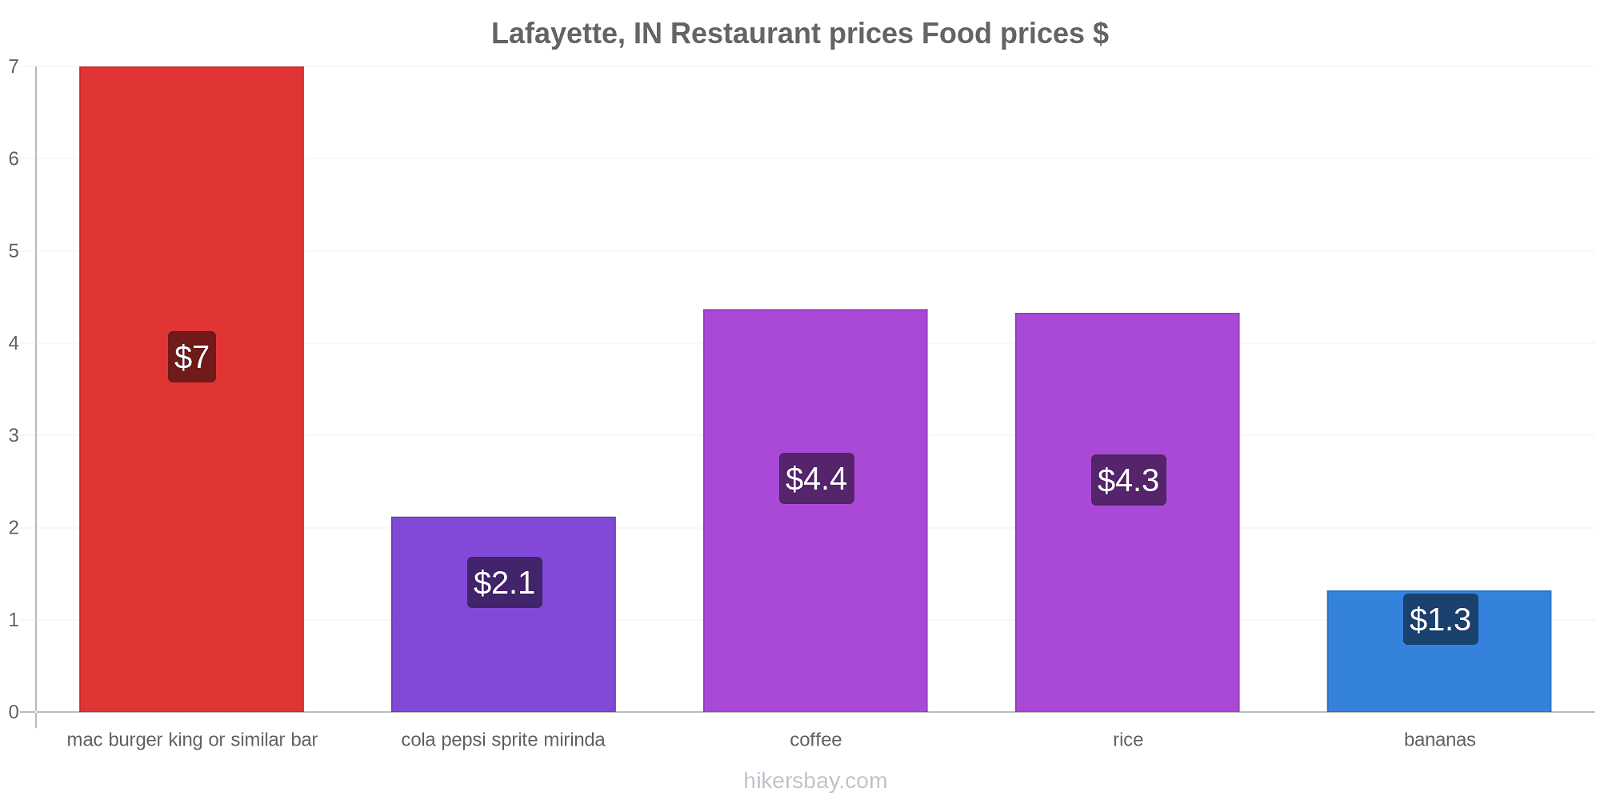 Lafayette, IN price changes hikersbay.com